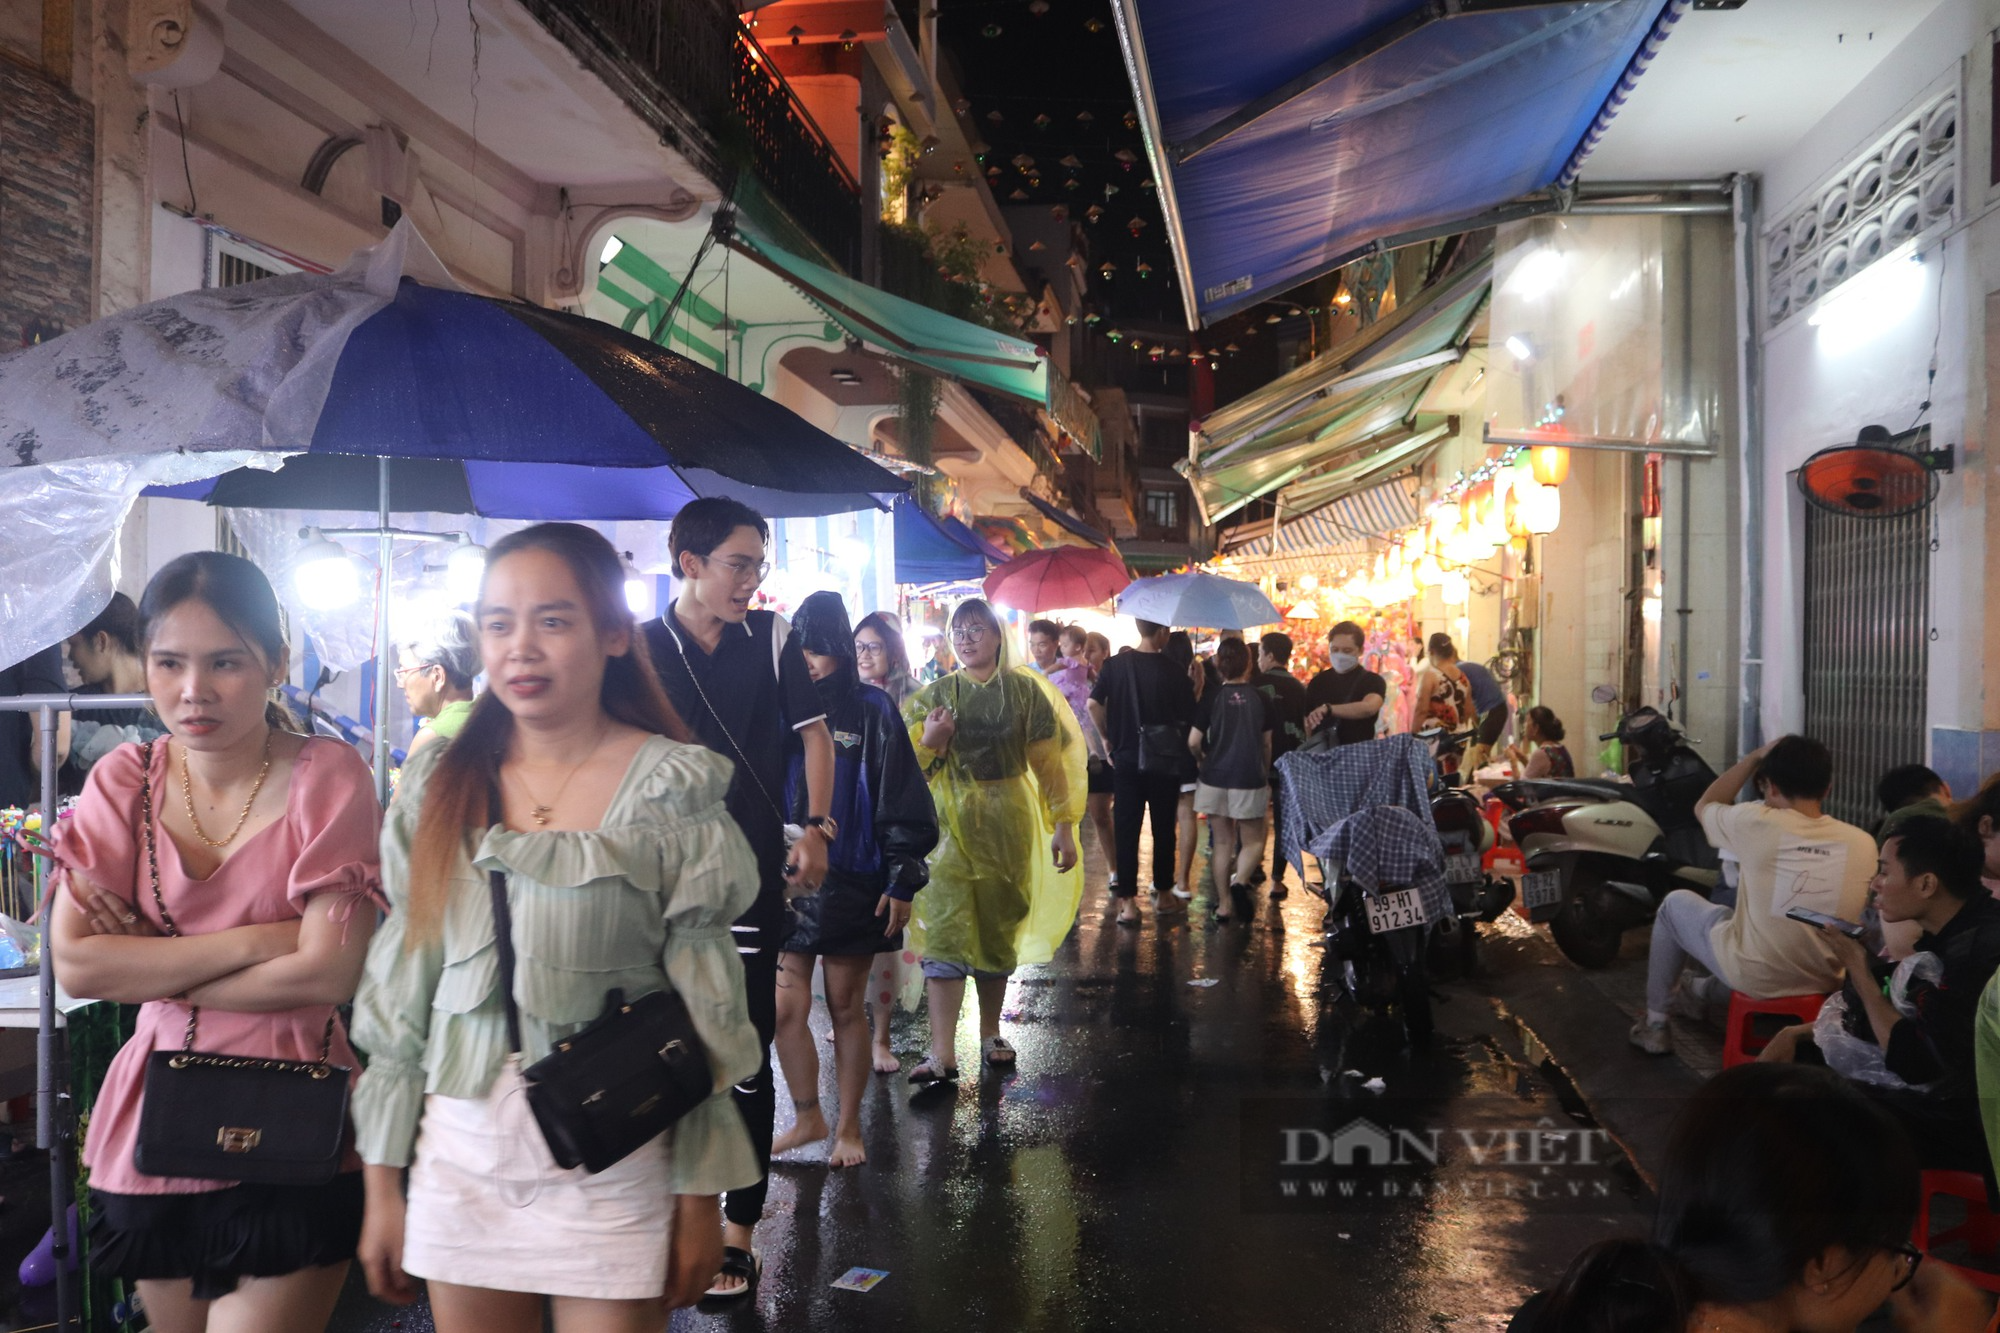 Bất chấp mưa lớn, người Sài Gòn vẫn che dù, mặc áo mưa đi chơi Trung thu - Ảnh 1.